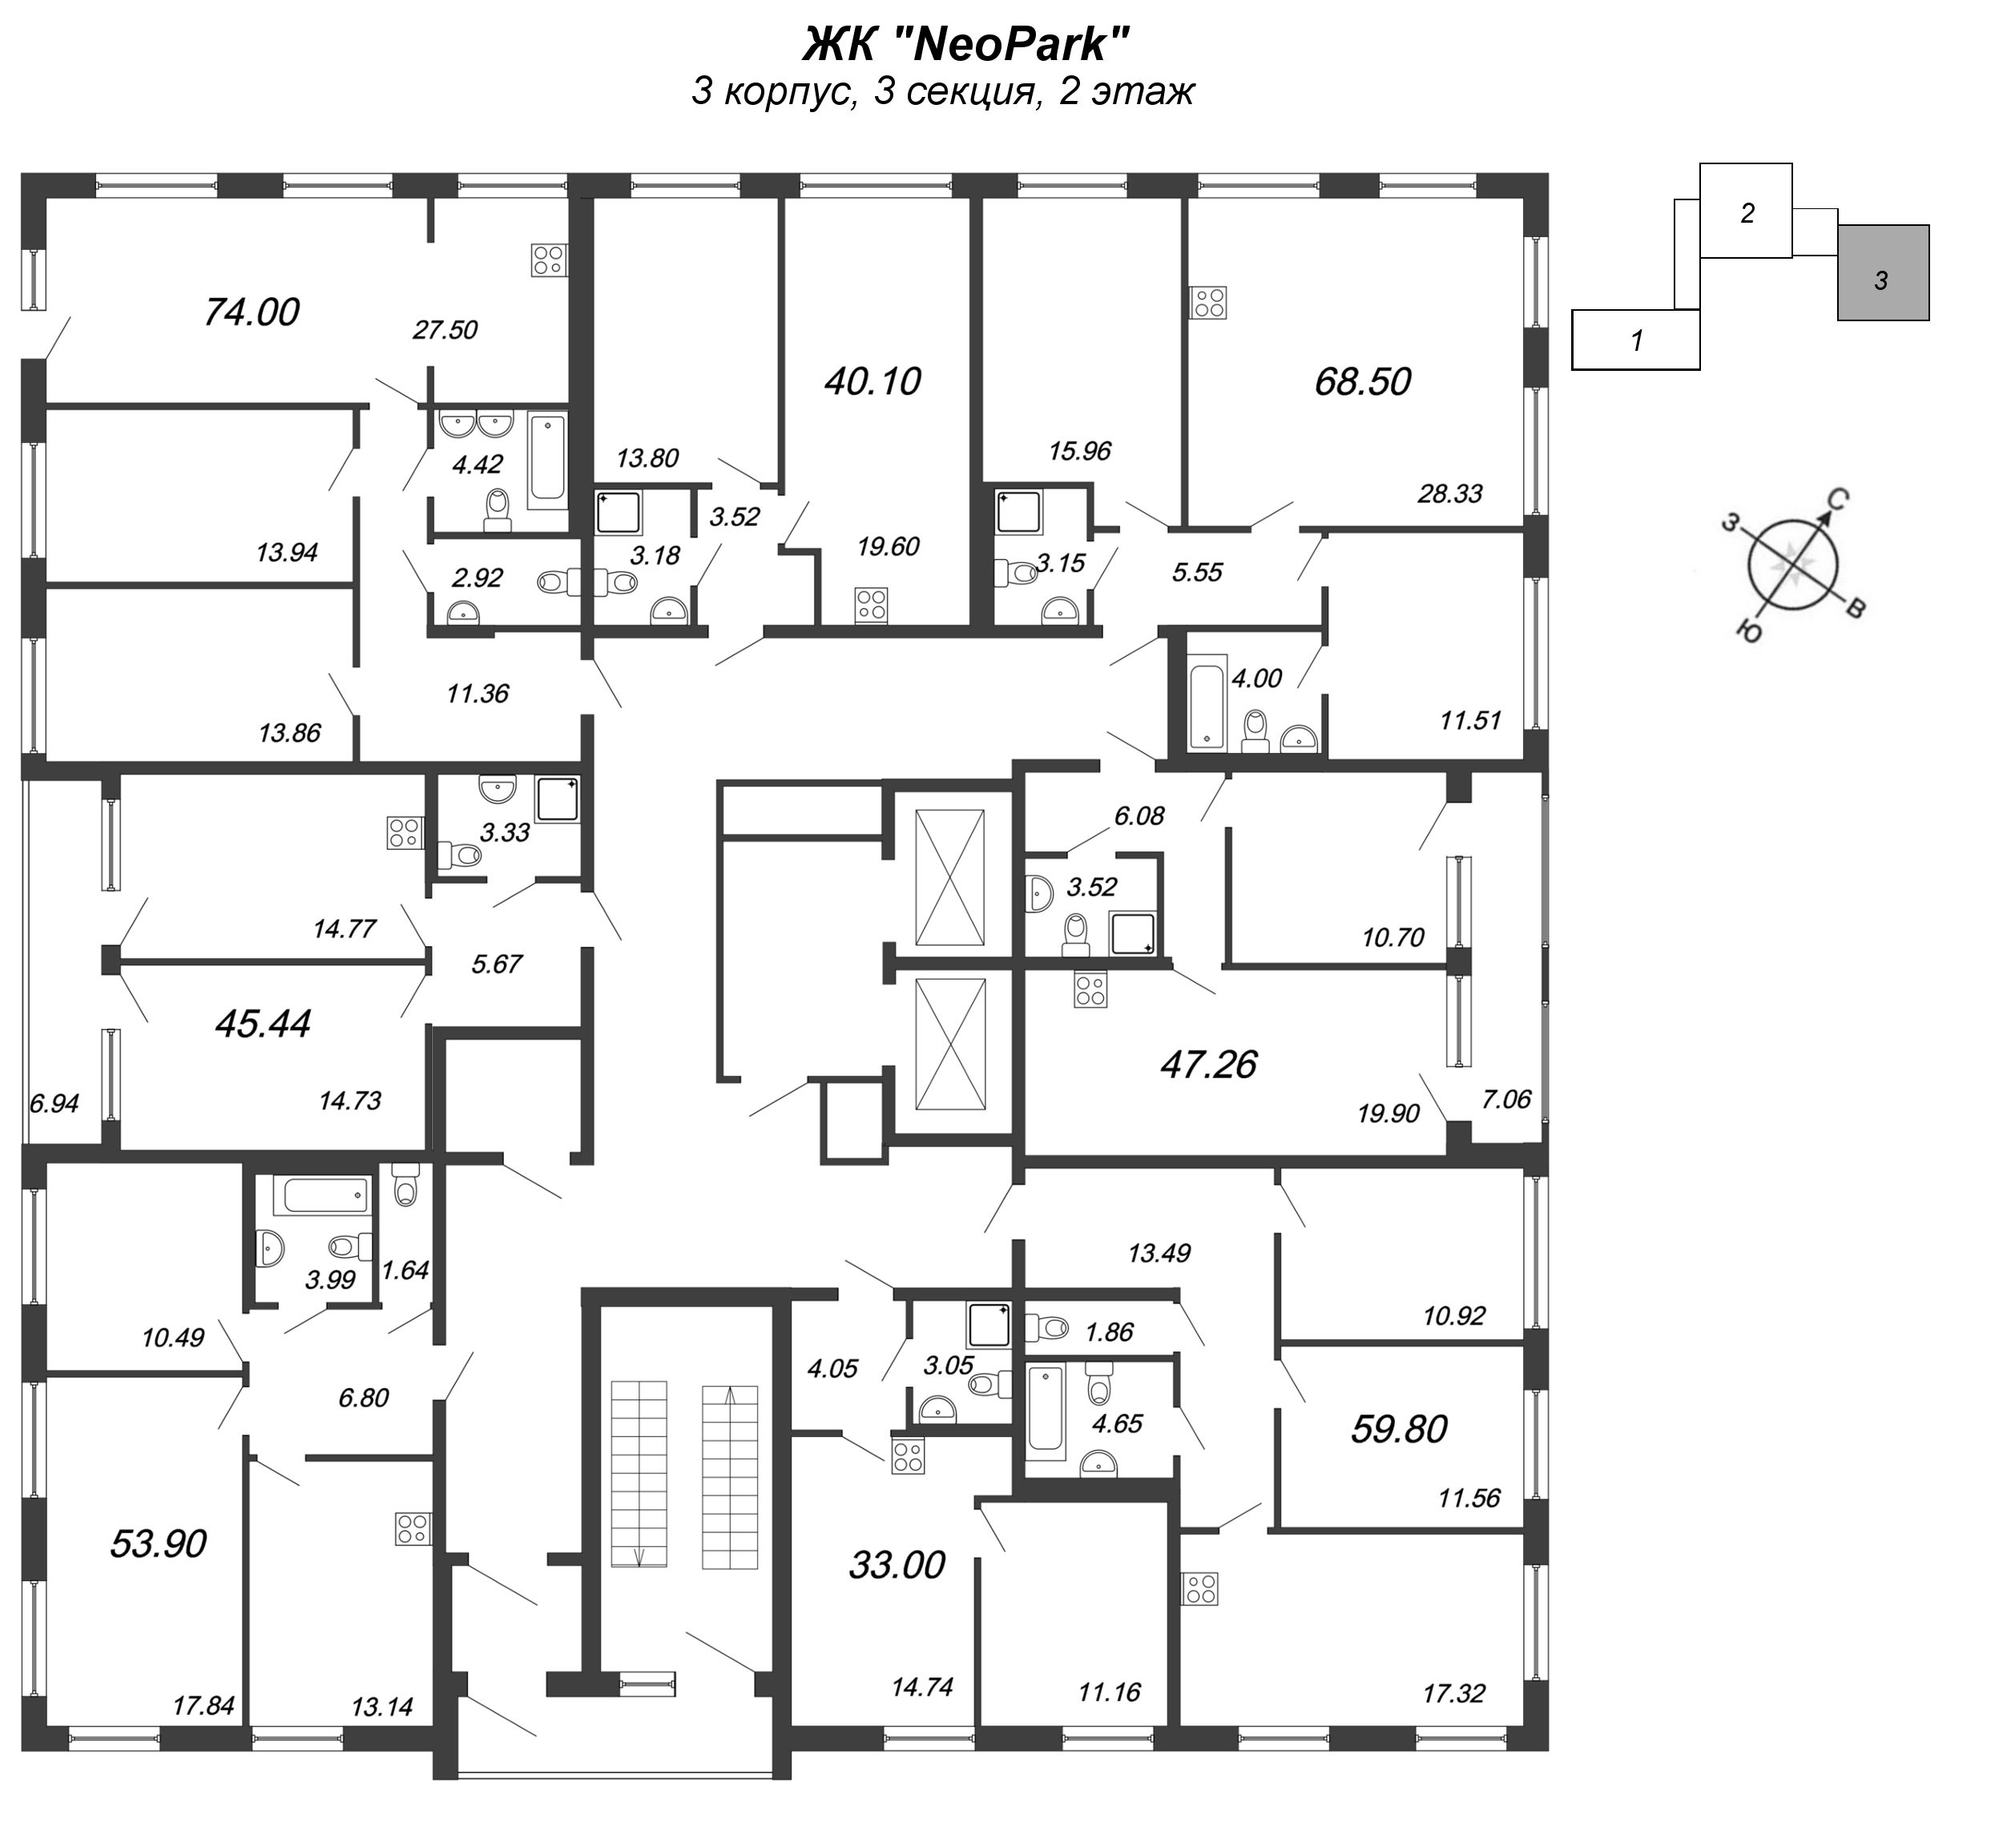 3-комнатная (Евро) квартира, 110.8 м² в ЖК "NeoPark" - планировка этажа